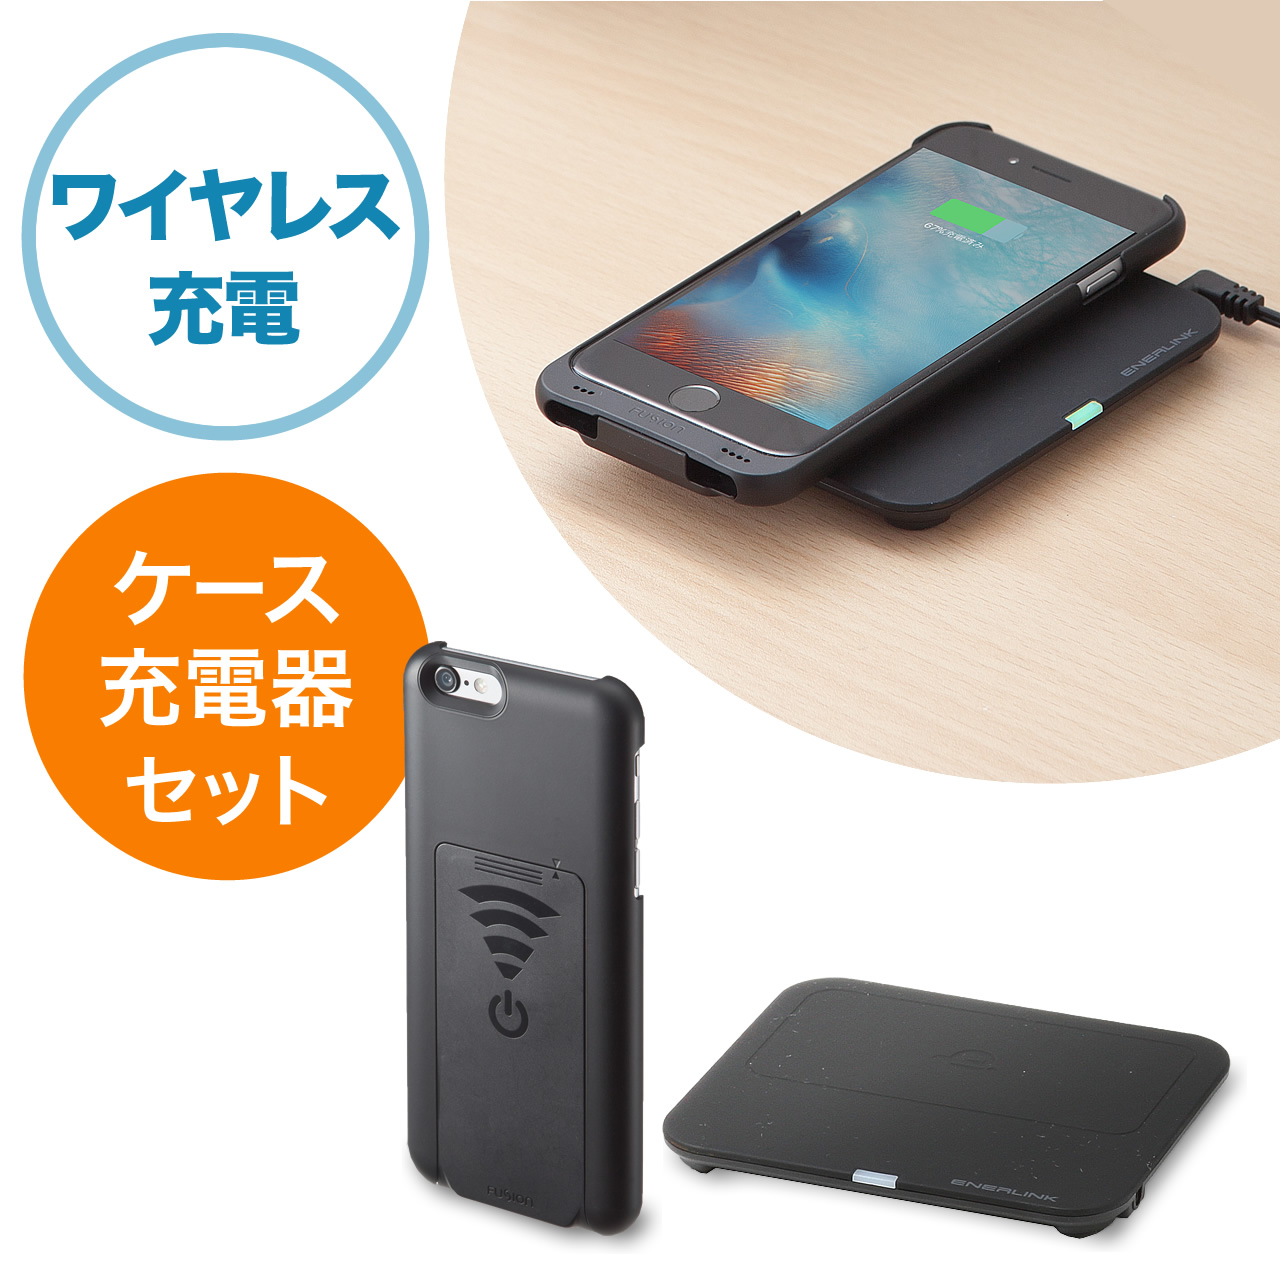 Iphone 6s 6 ワイヤレス充電ケース Qiケース 充電パッドセット Wir 047bsetの販売商品 通販ならサンワダイレクト